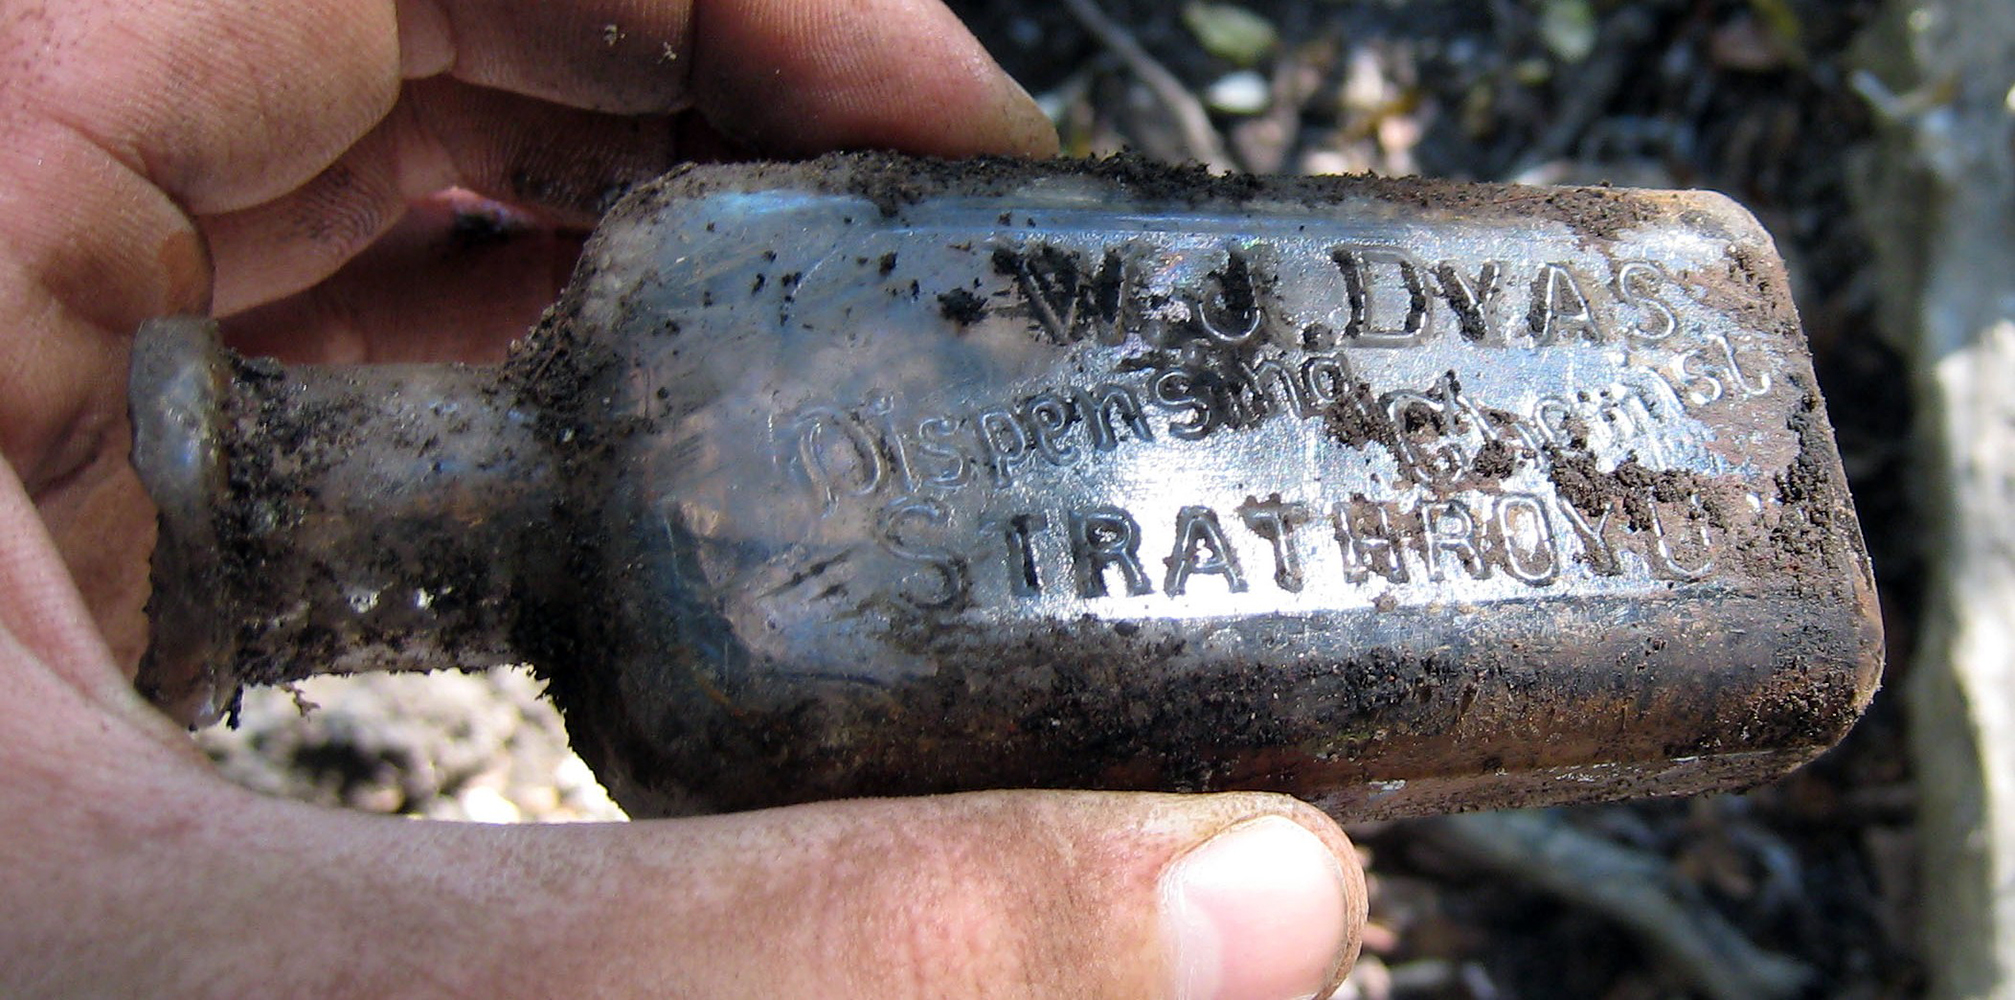 W.J.DYAS bottle from Strathroy, dug September, 2007